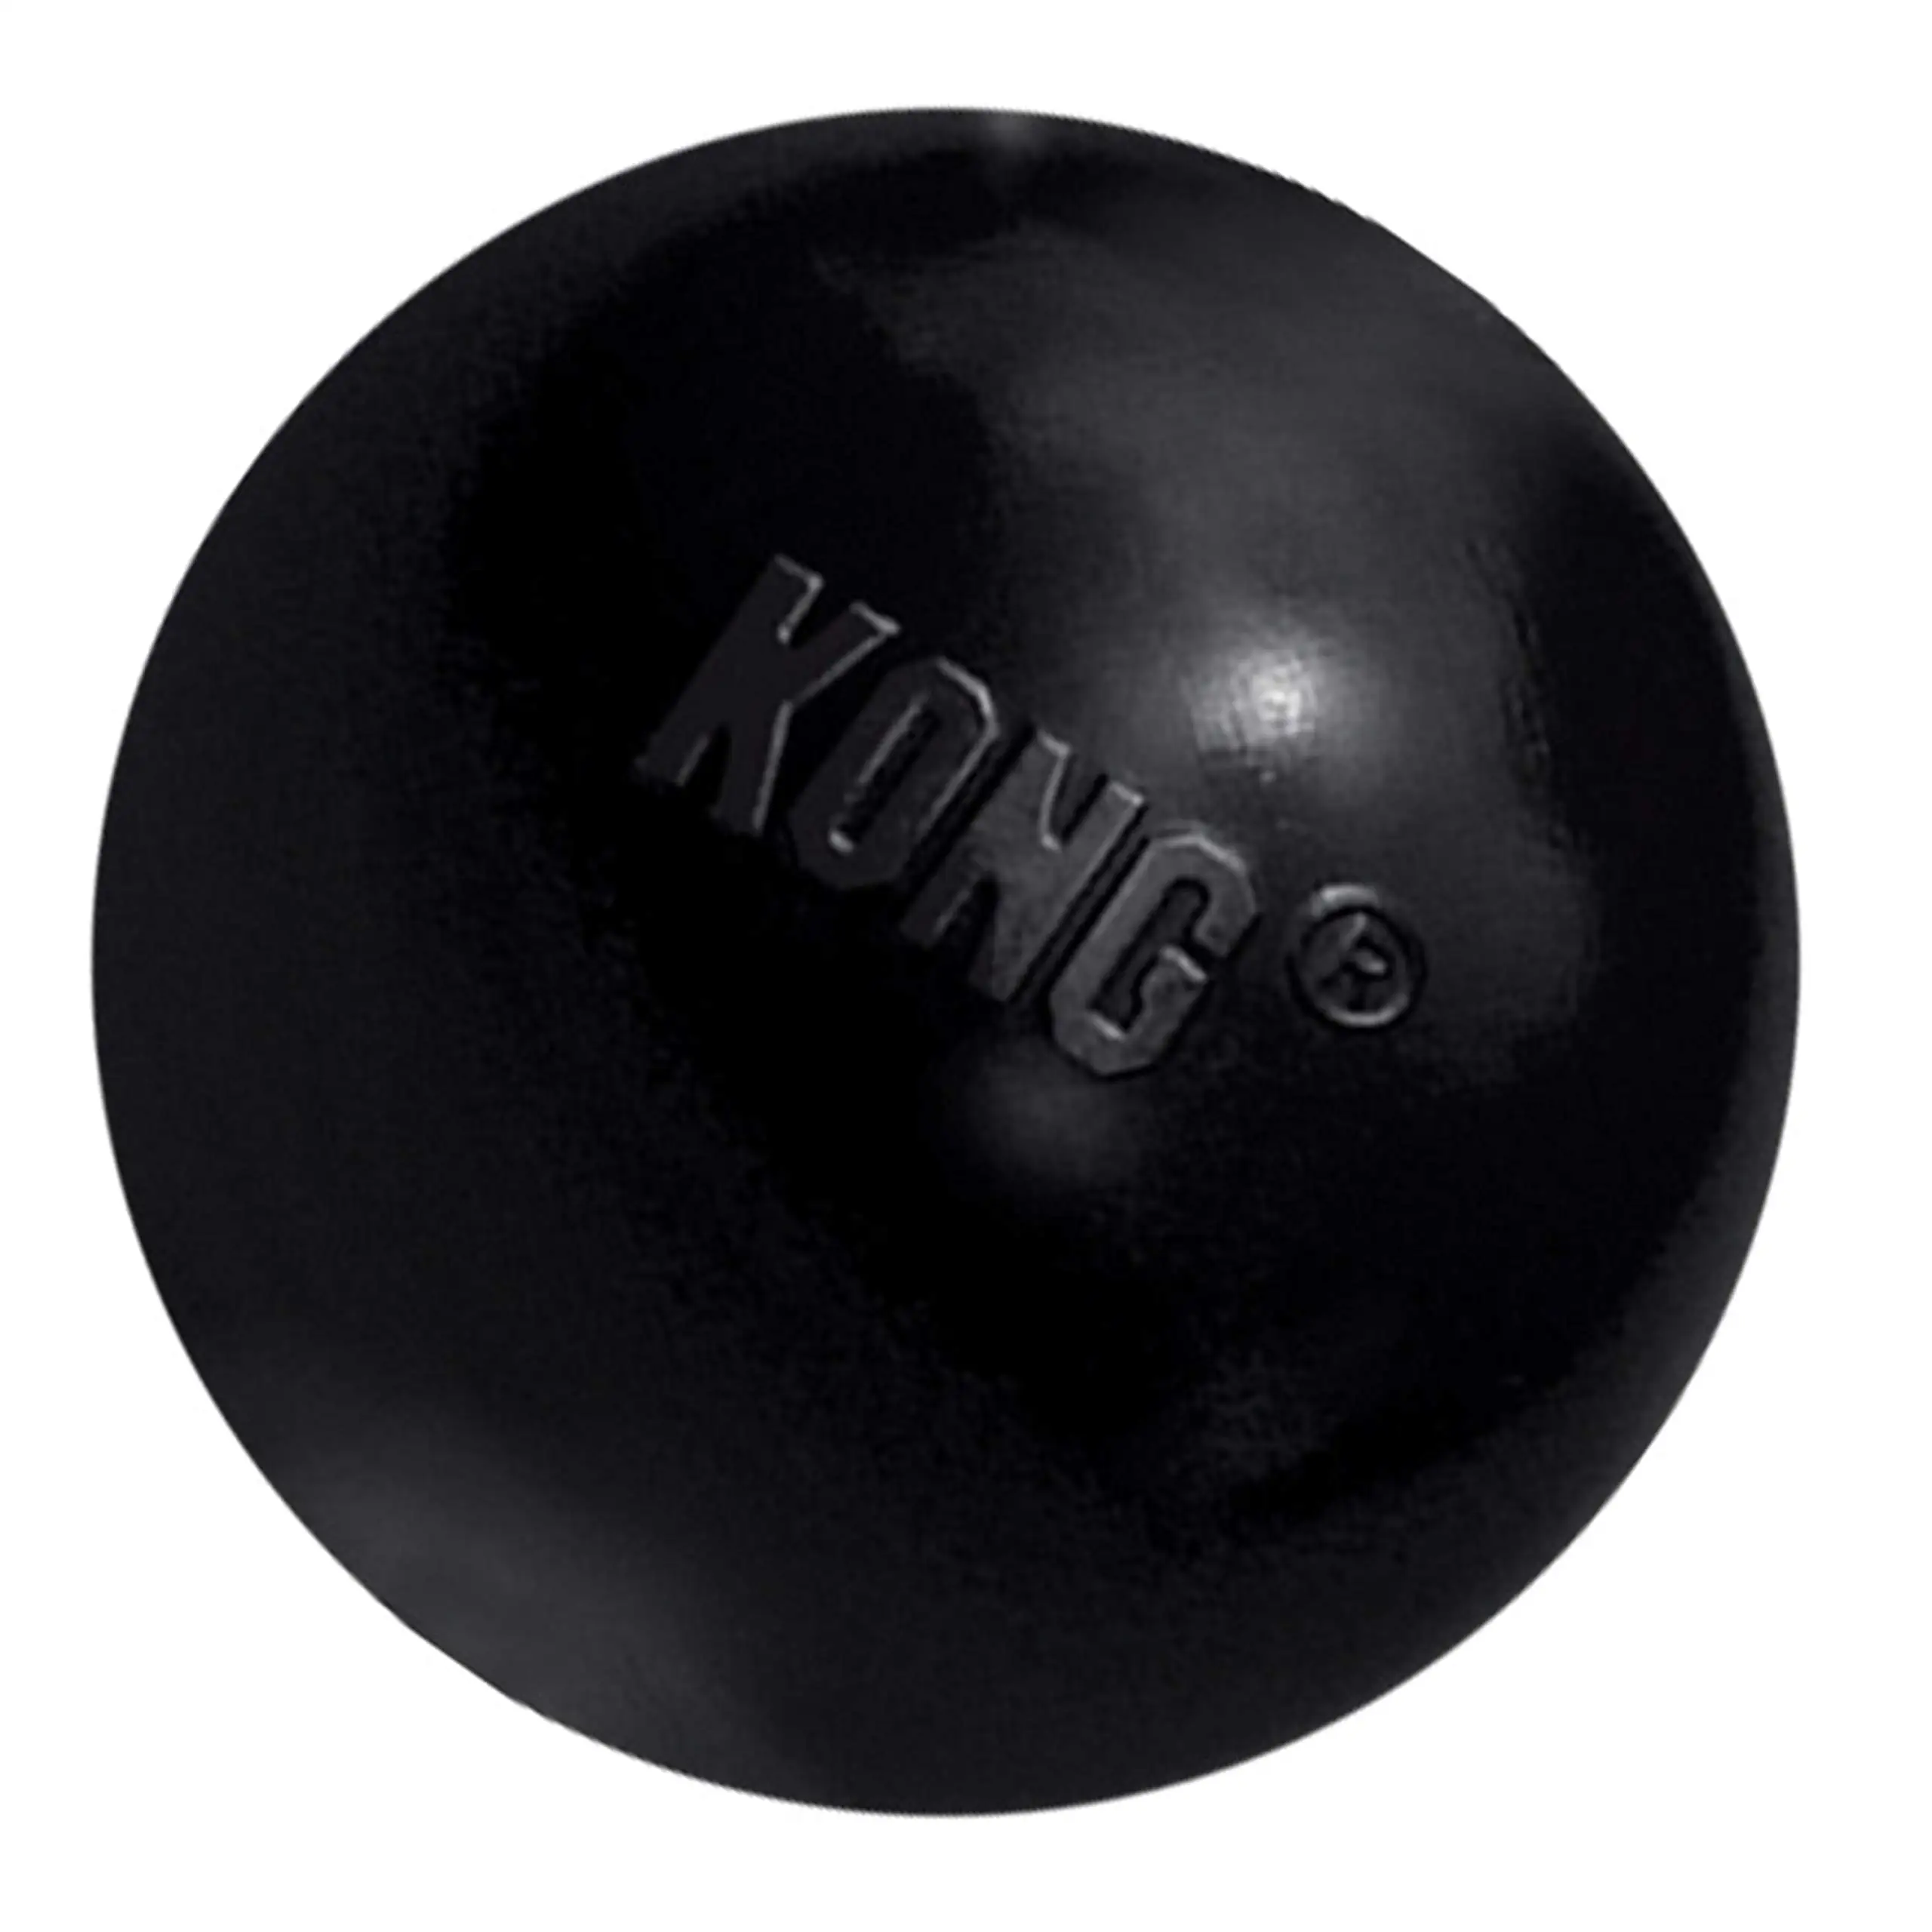 

KONG-Экстремальный мяч-Прочная резиновая игрушка для собак, Черная